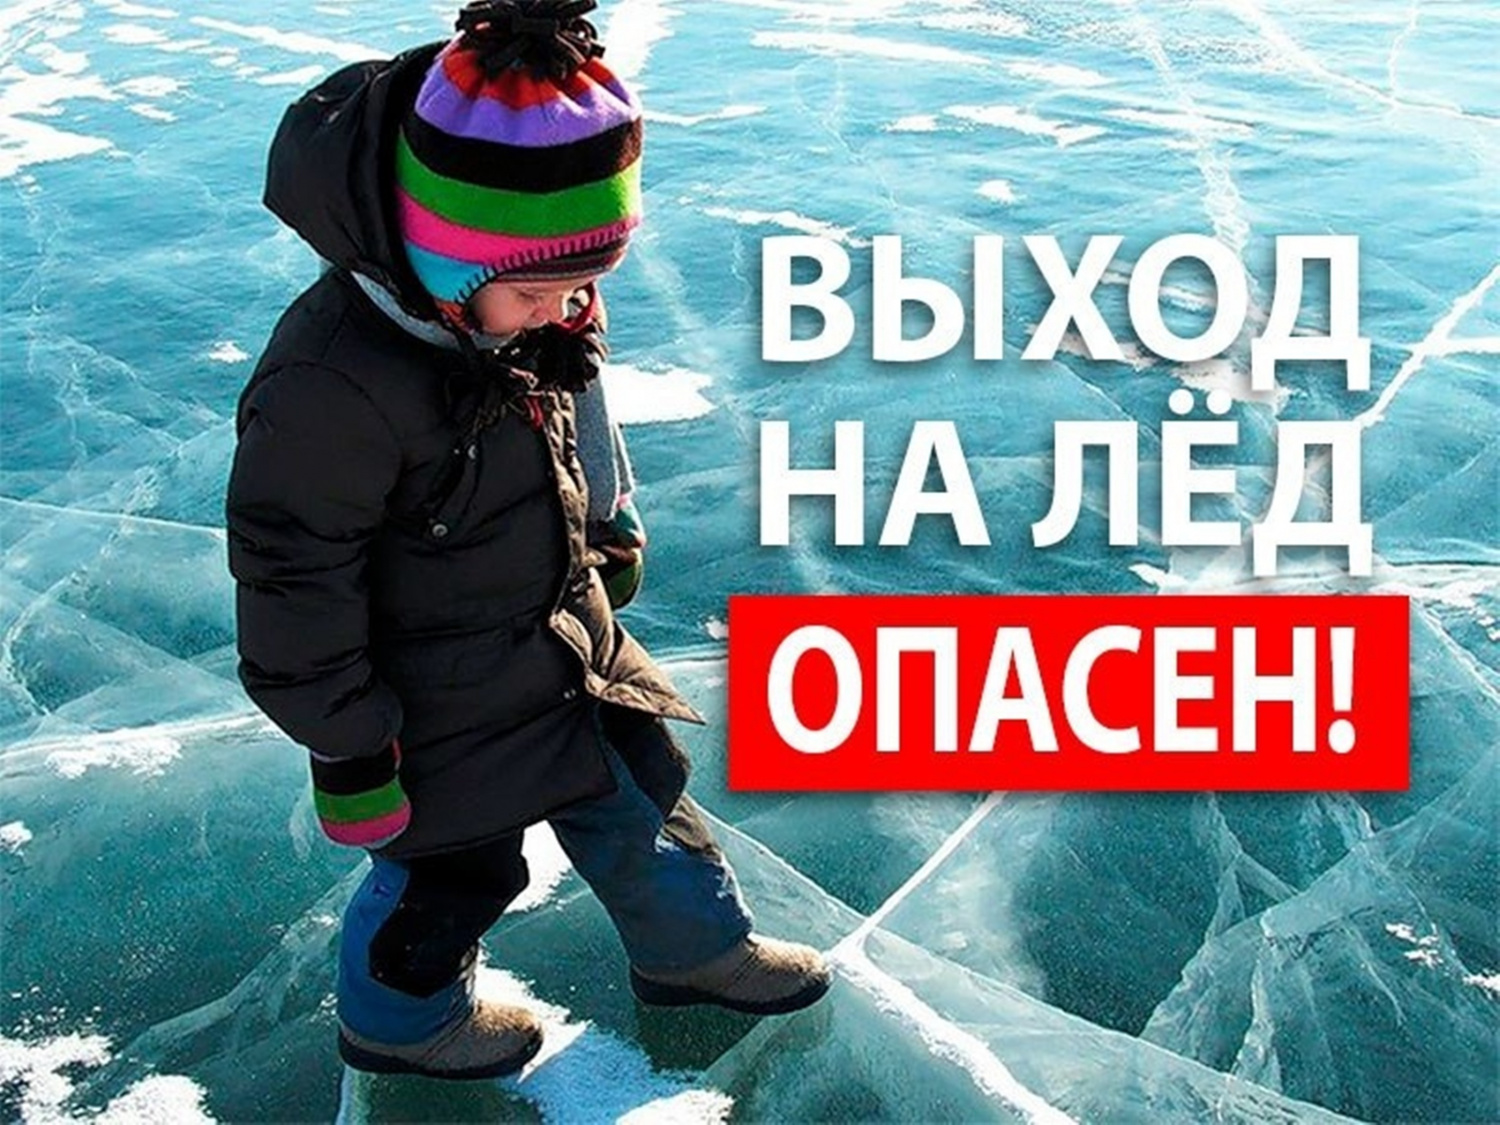 Опасно! Лёд!.